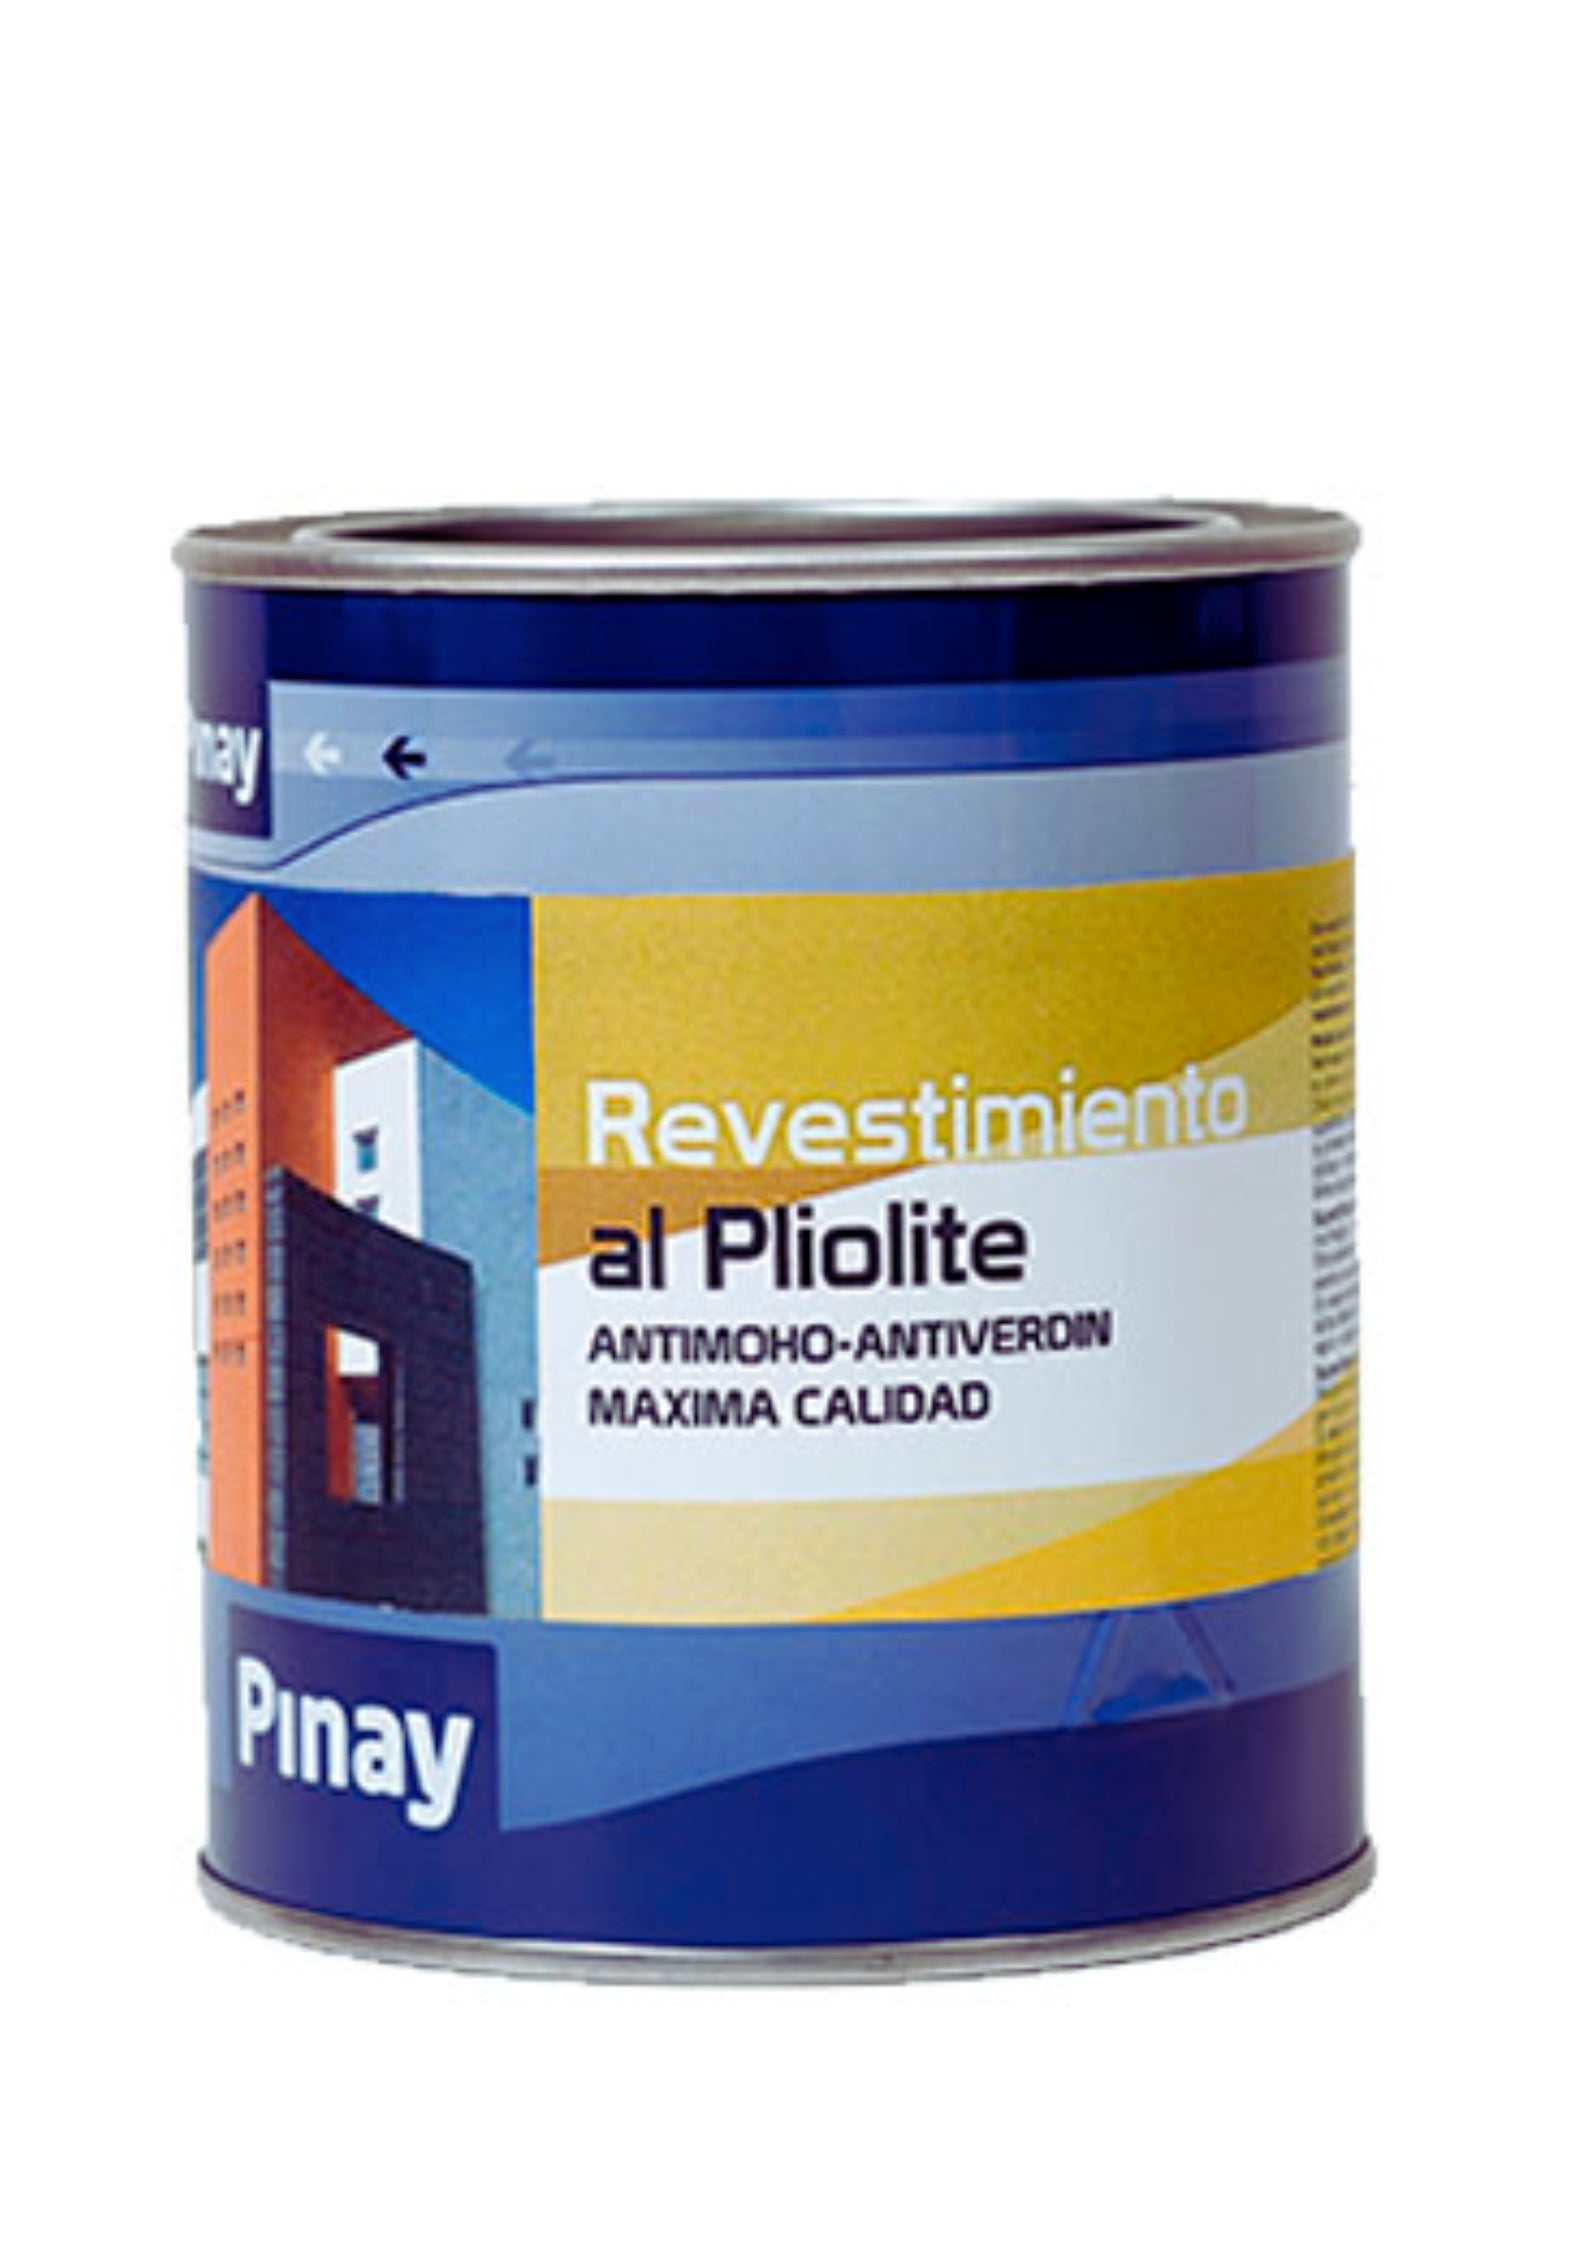 Revestimiento al Pliolite Pinay 15L.